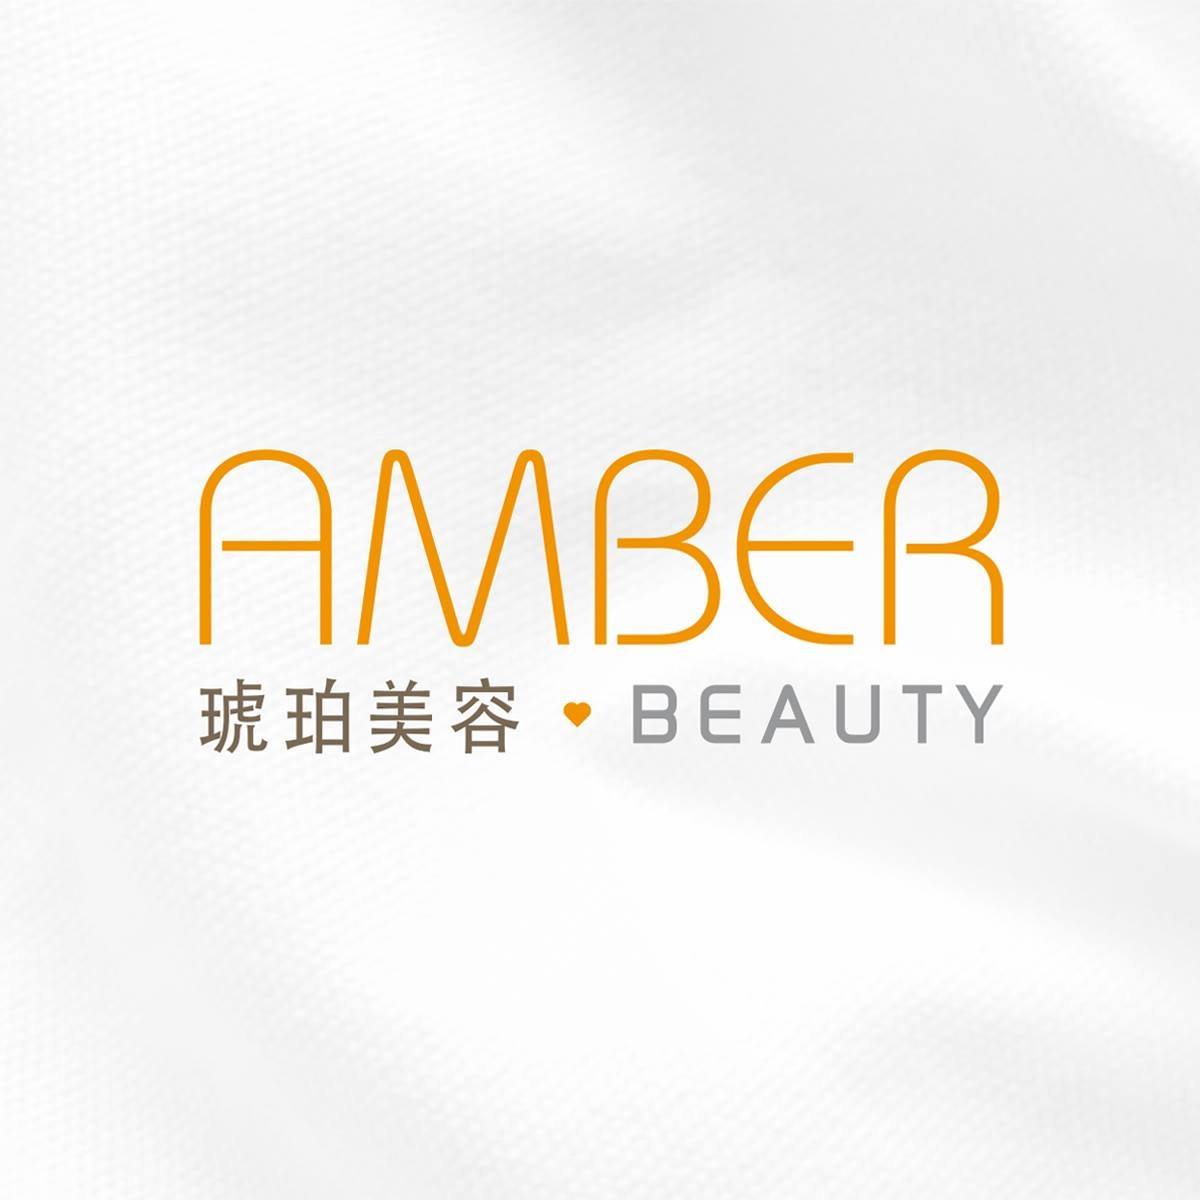 香港美容網 Hong Kong Beauty Salon 美容院 / 美容師: 琥珀美容 Amber Beauty (荃灣店)